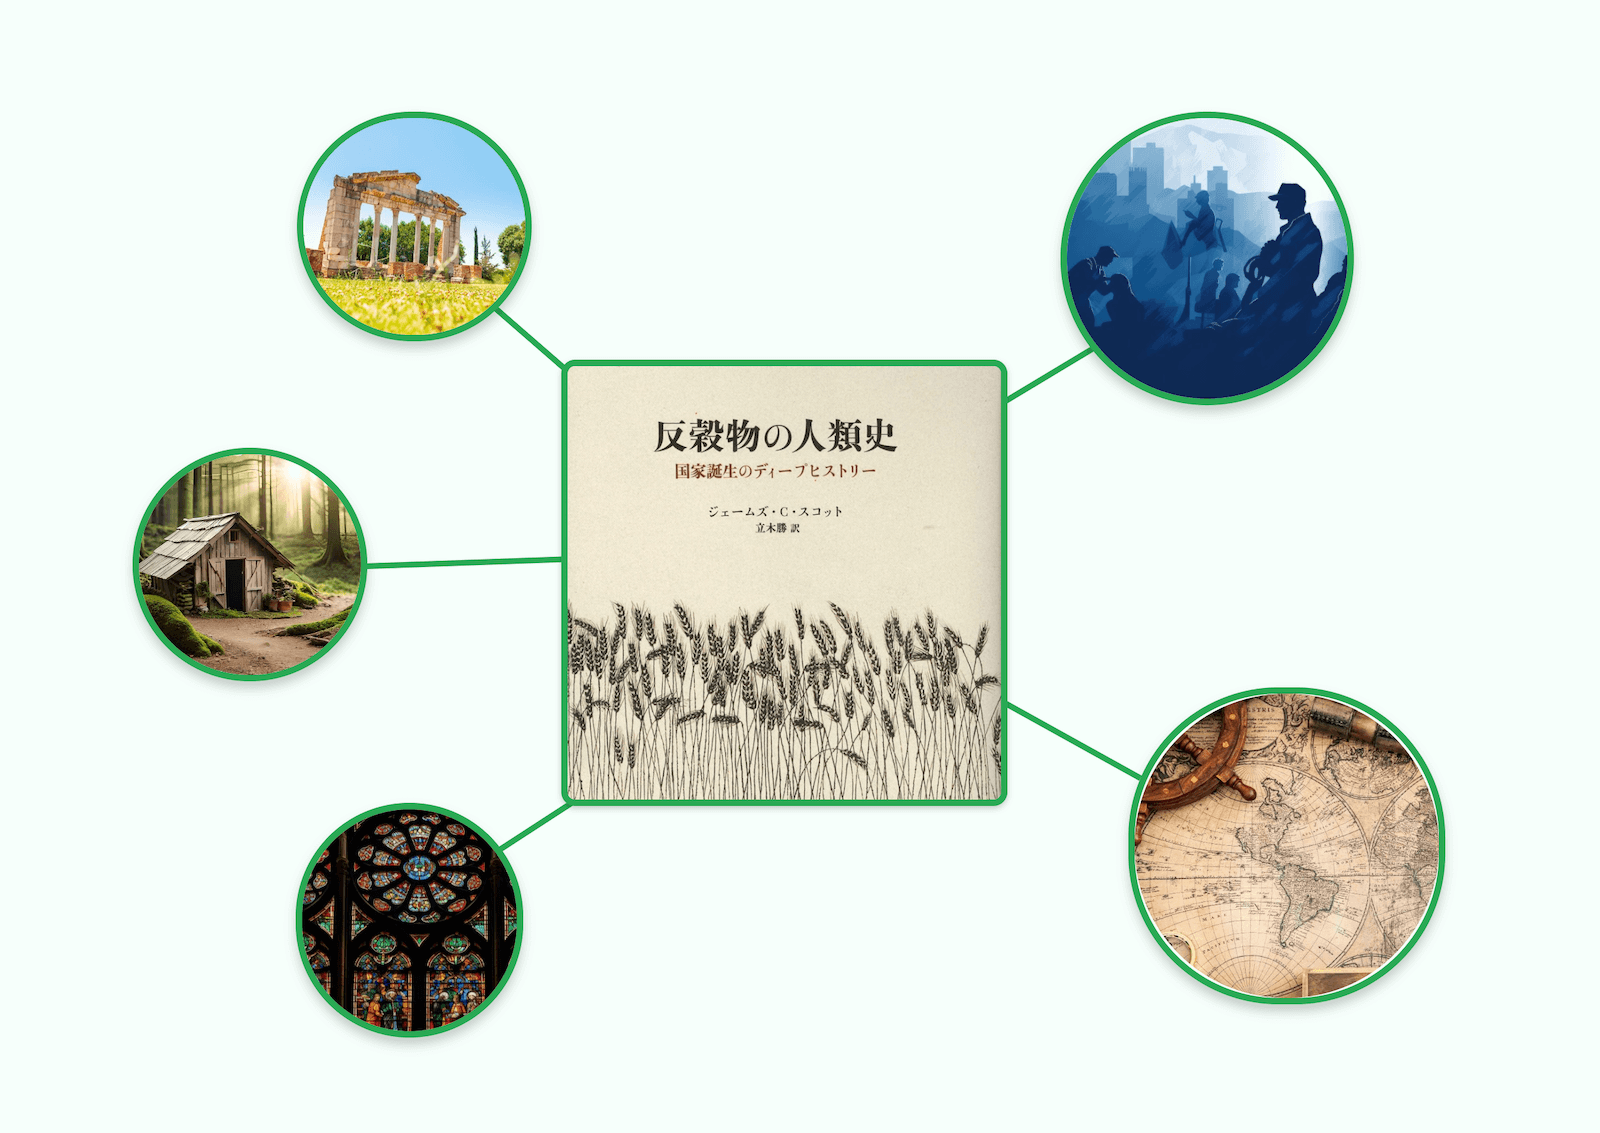 要約マップ】『反穀物の人類史』を図解してわかりやすく解説します 